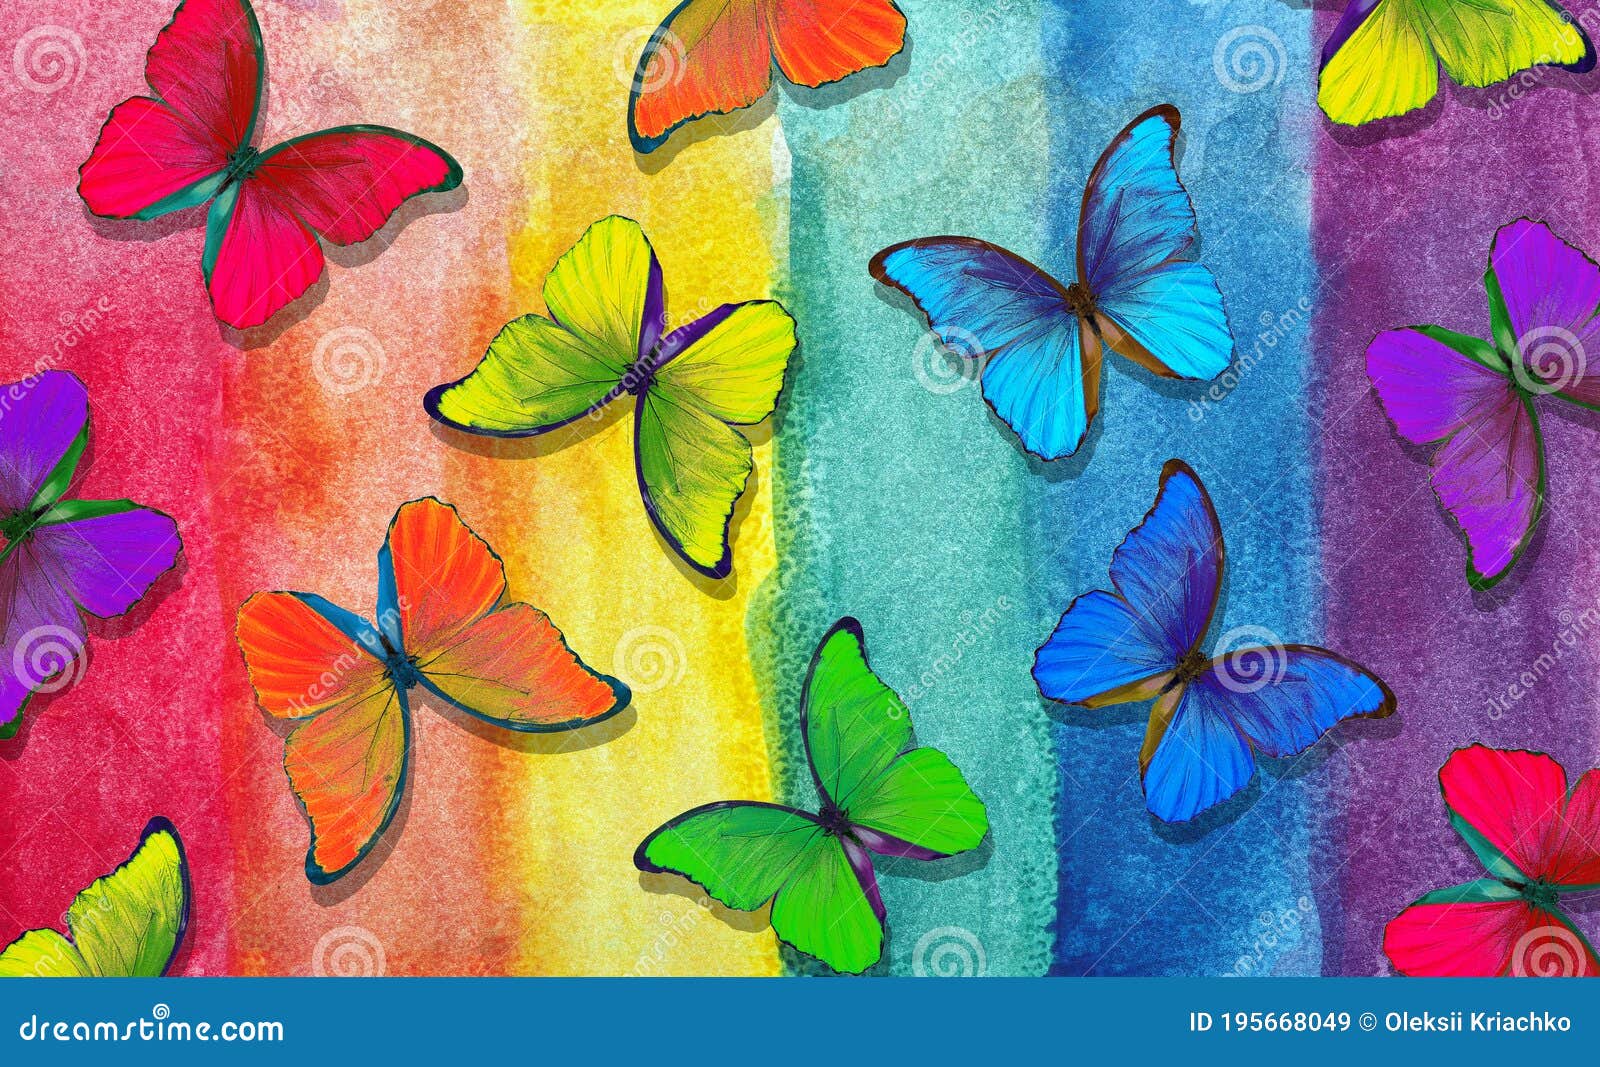 duif instinct Algemeen Kleuren Van De Regenboog. Patroon Van Meerkleurige Morfovlinders. Abstract  Kleurig Patroon. Meerkleurige Kleurtinten. Stock Afbeelding - Image of  mooi, verf: 195668049